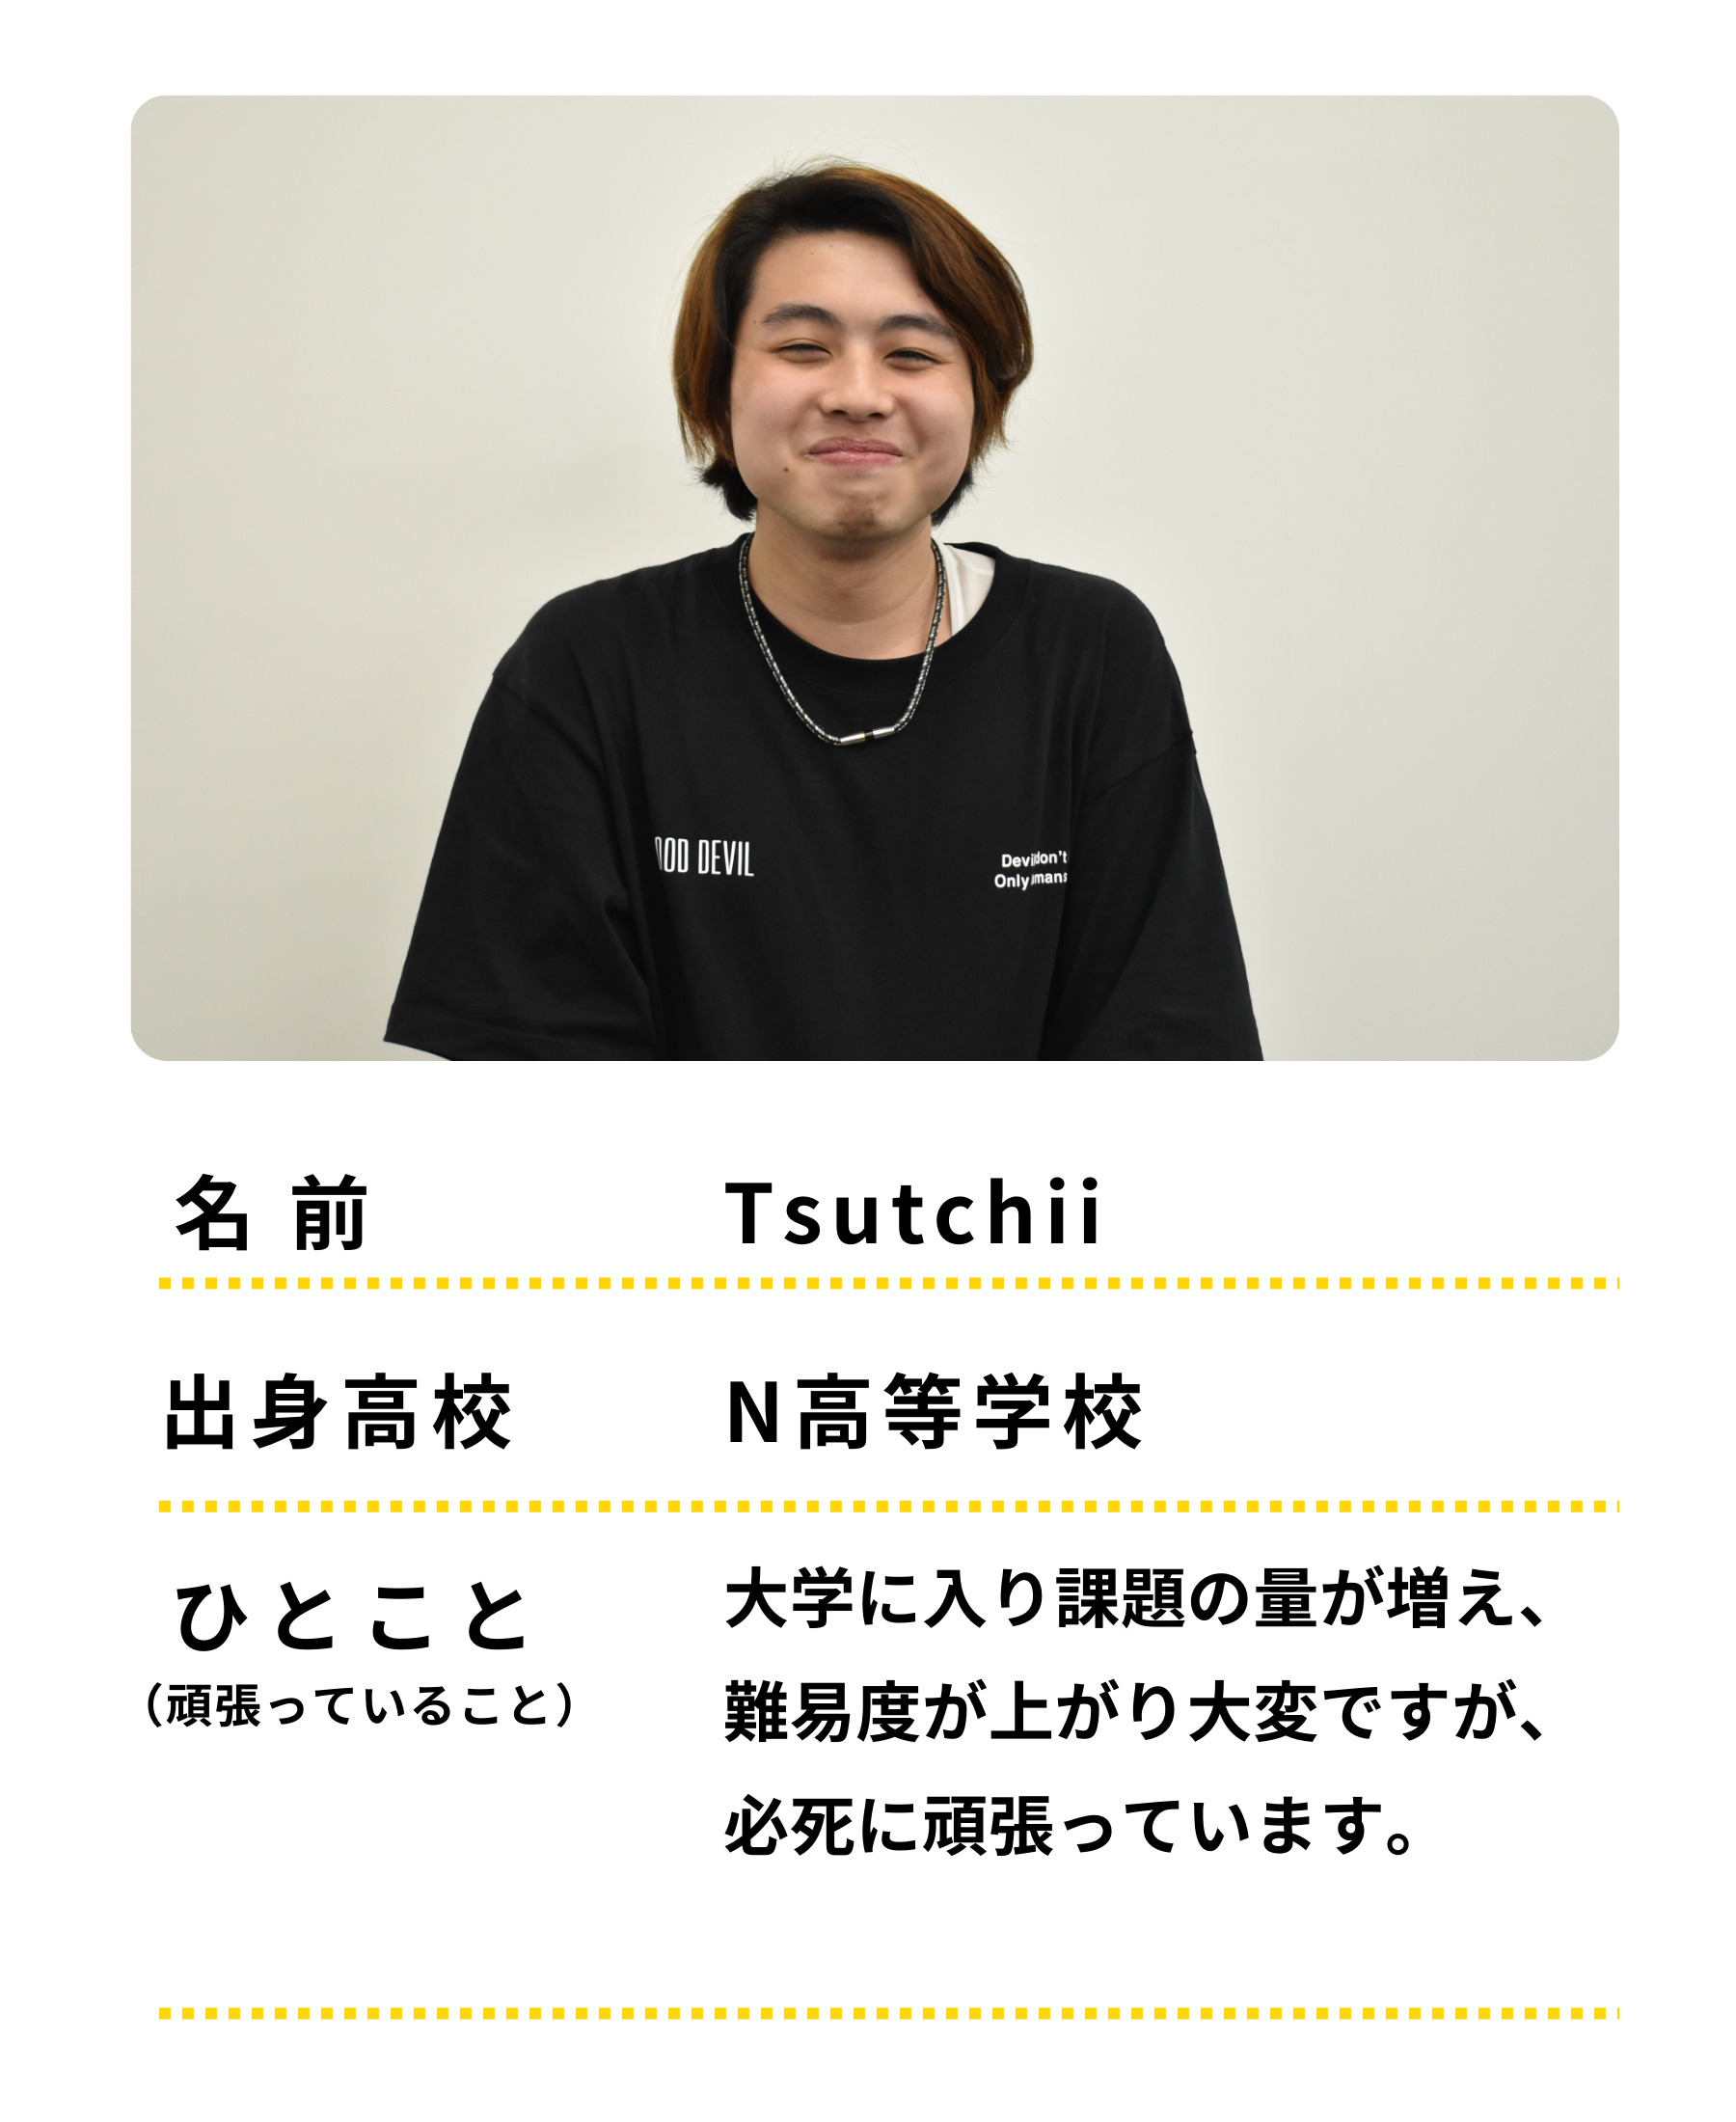 名前：Tsutchii、出身高校：N高等学校、ひとこと：大学に入り課題の量が増え、難易度が上がり大変ですが、必死に頑張っています。